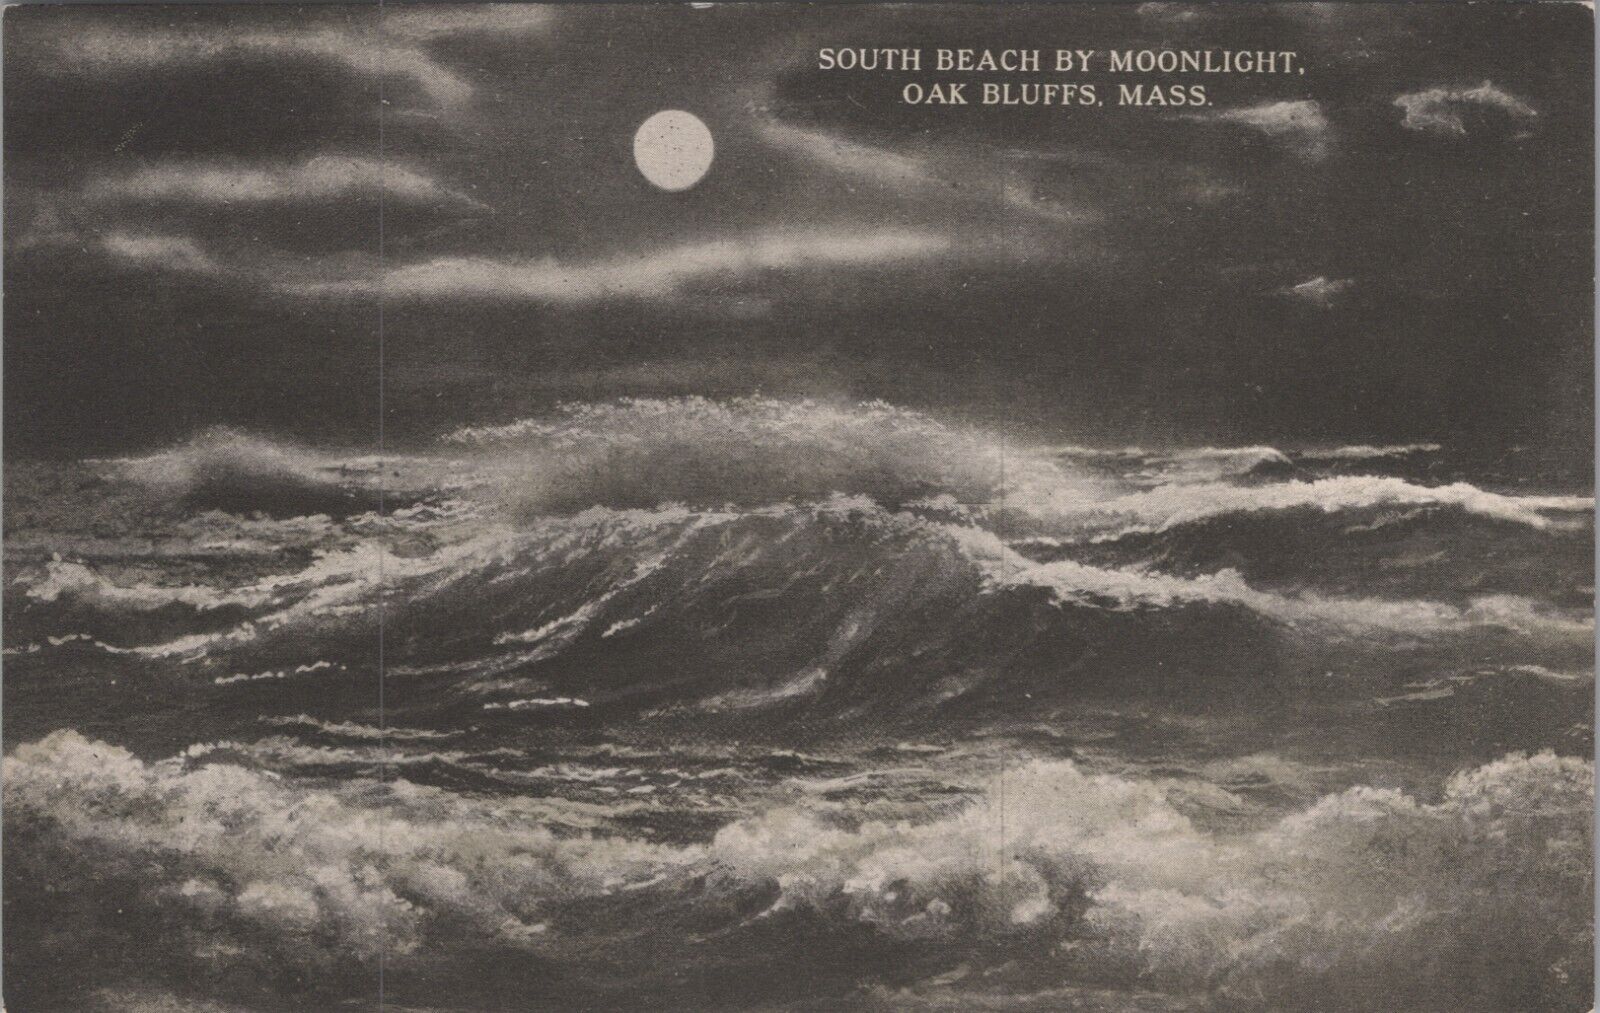 South Beach by Moonlight Oak Bluffs, Massachusetts MA c1910s Postcard 7471.1